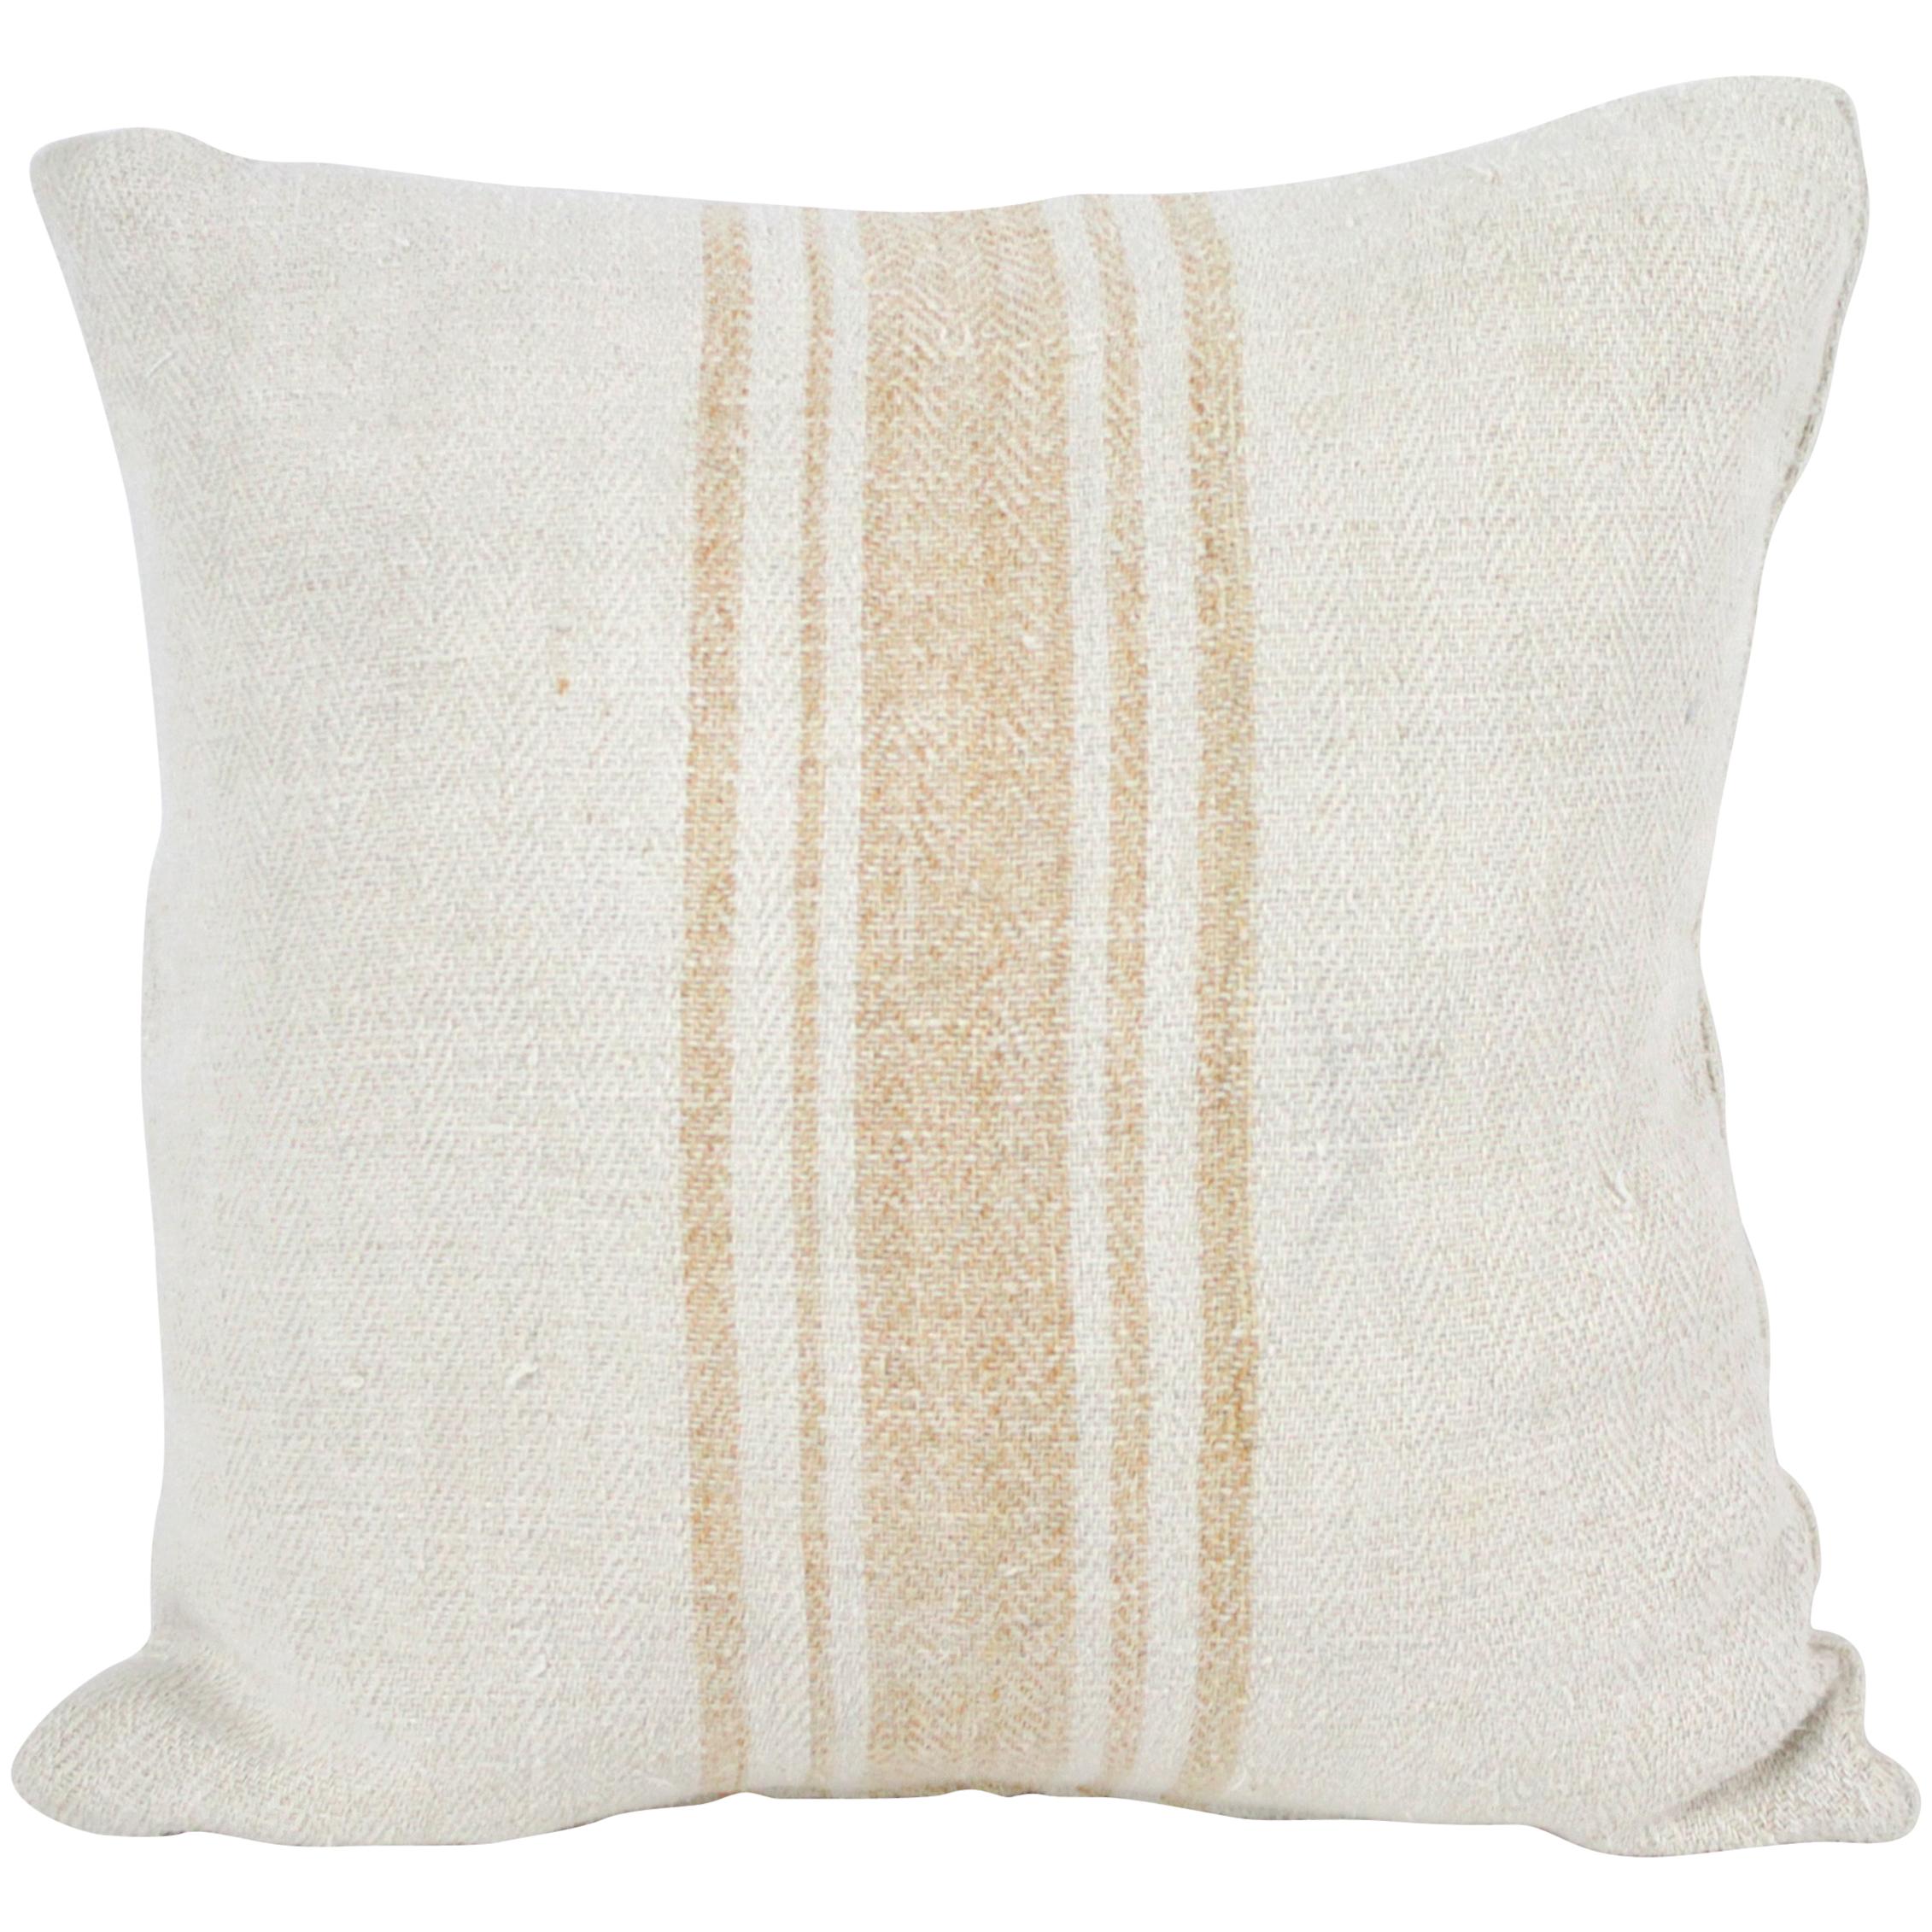 Antique Nubby 19th Century European Orange Stripe Grain Sack Pillows